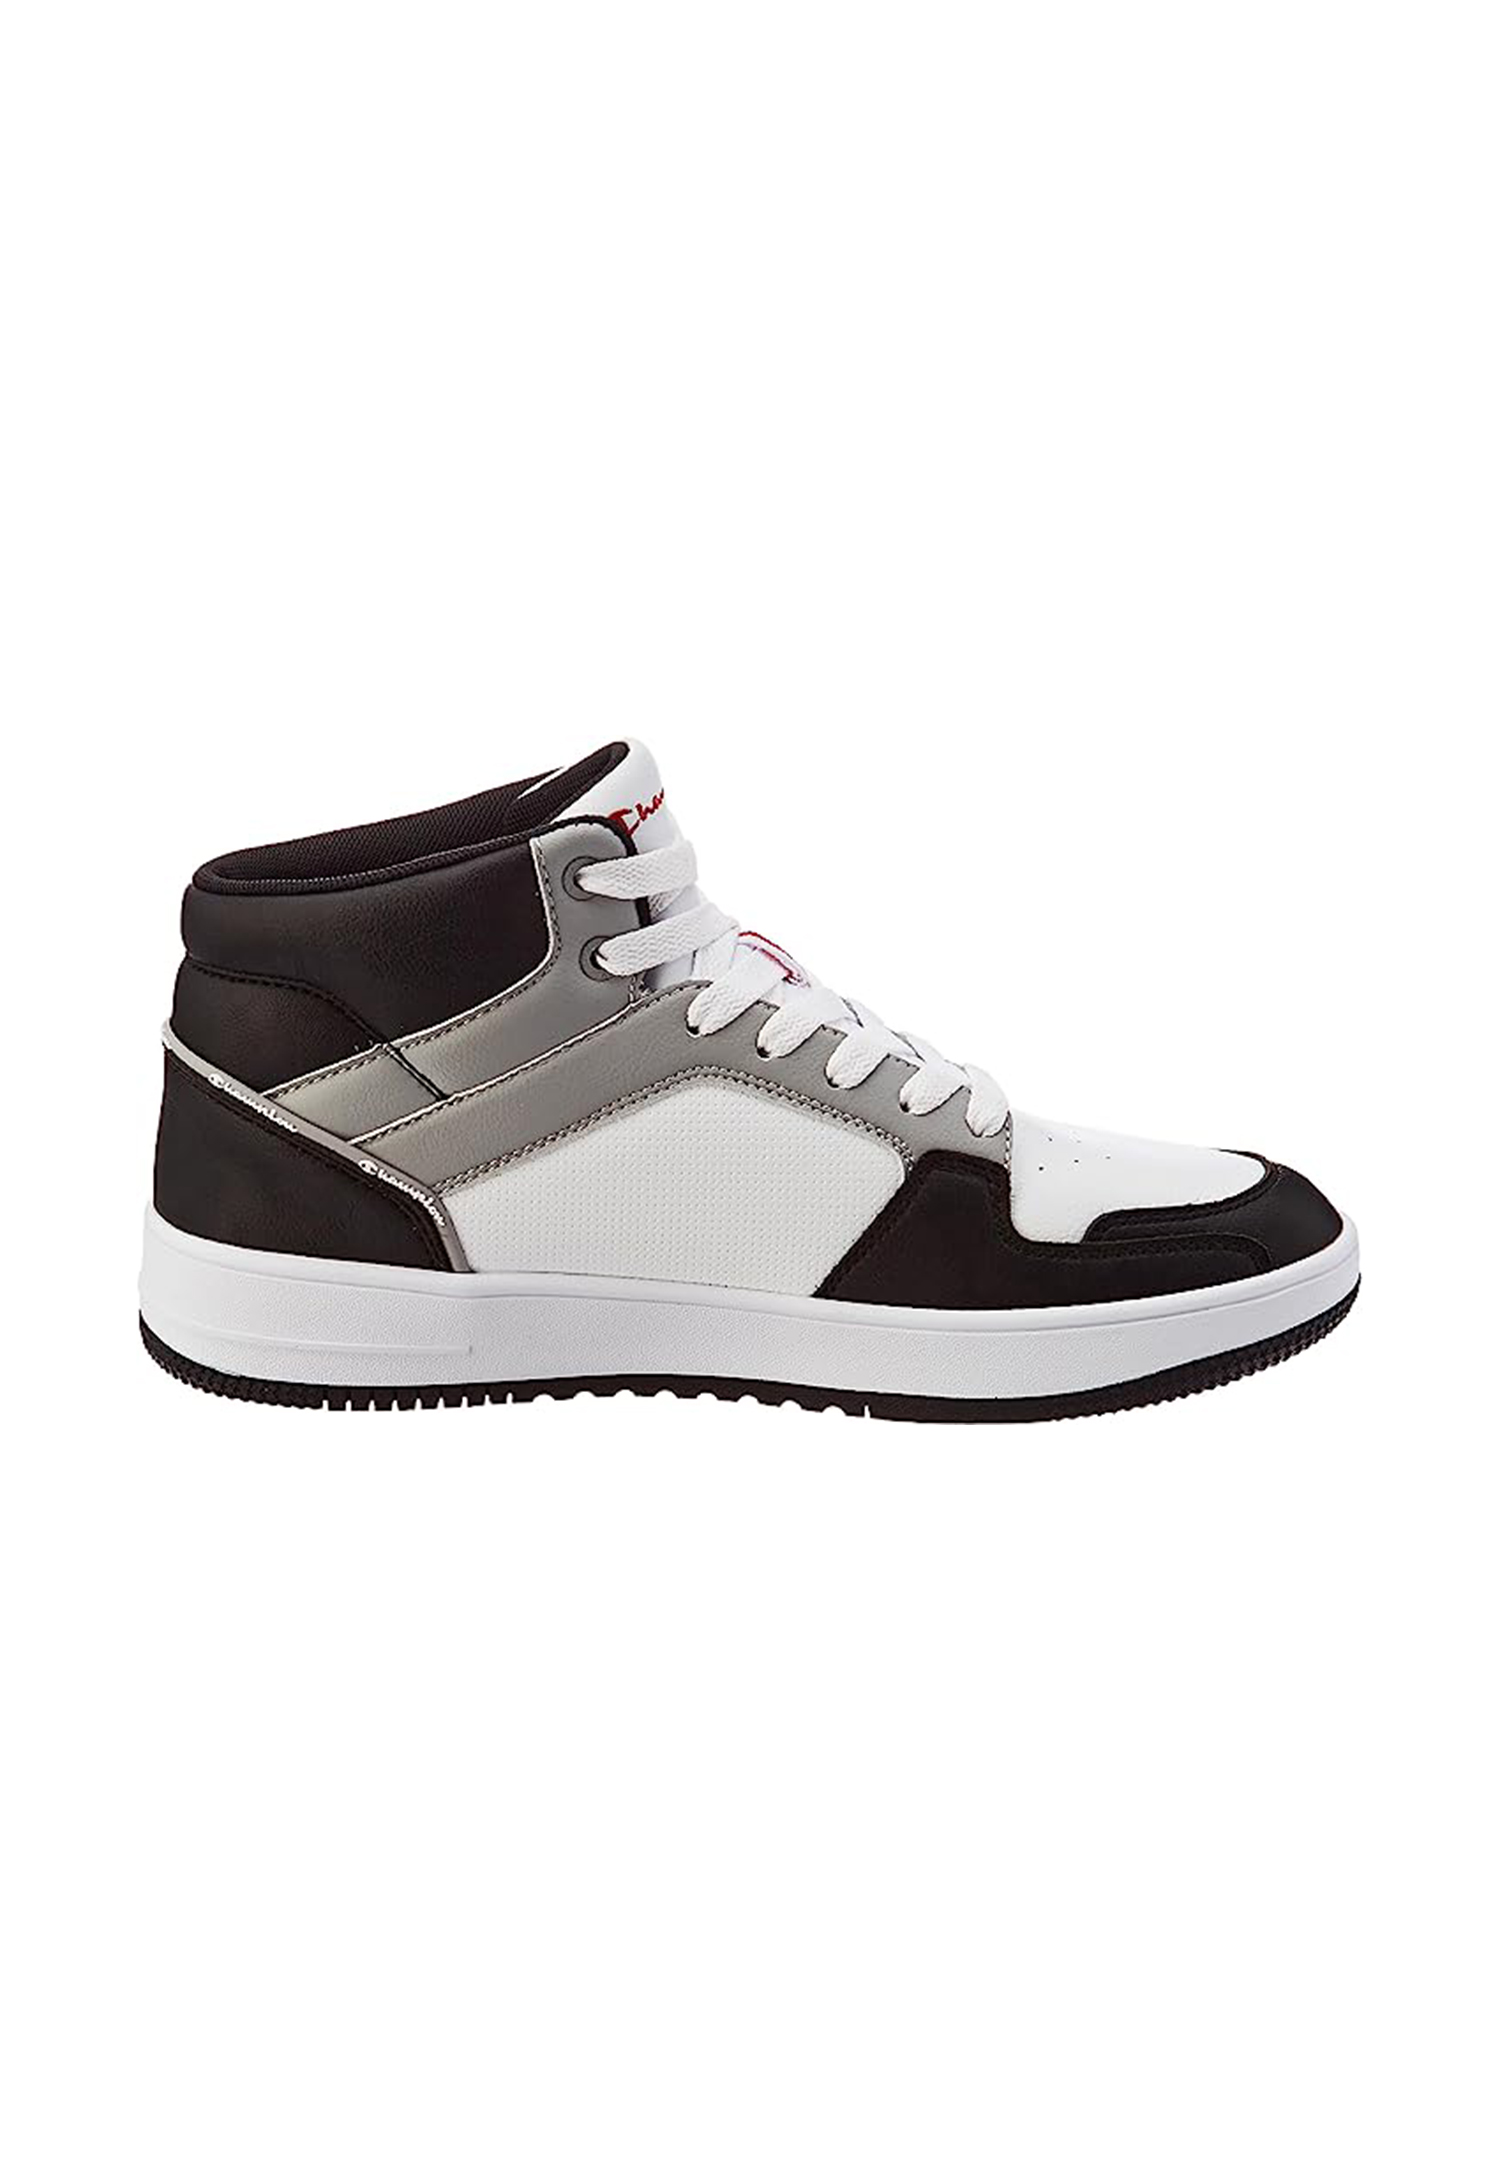 Champion REBOUND 2.0 MID Herren Sneaker S21907-CHA-WW014  weiß/schwarz/grau